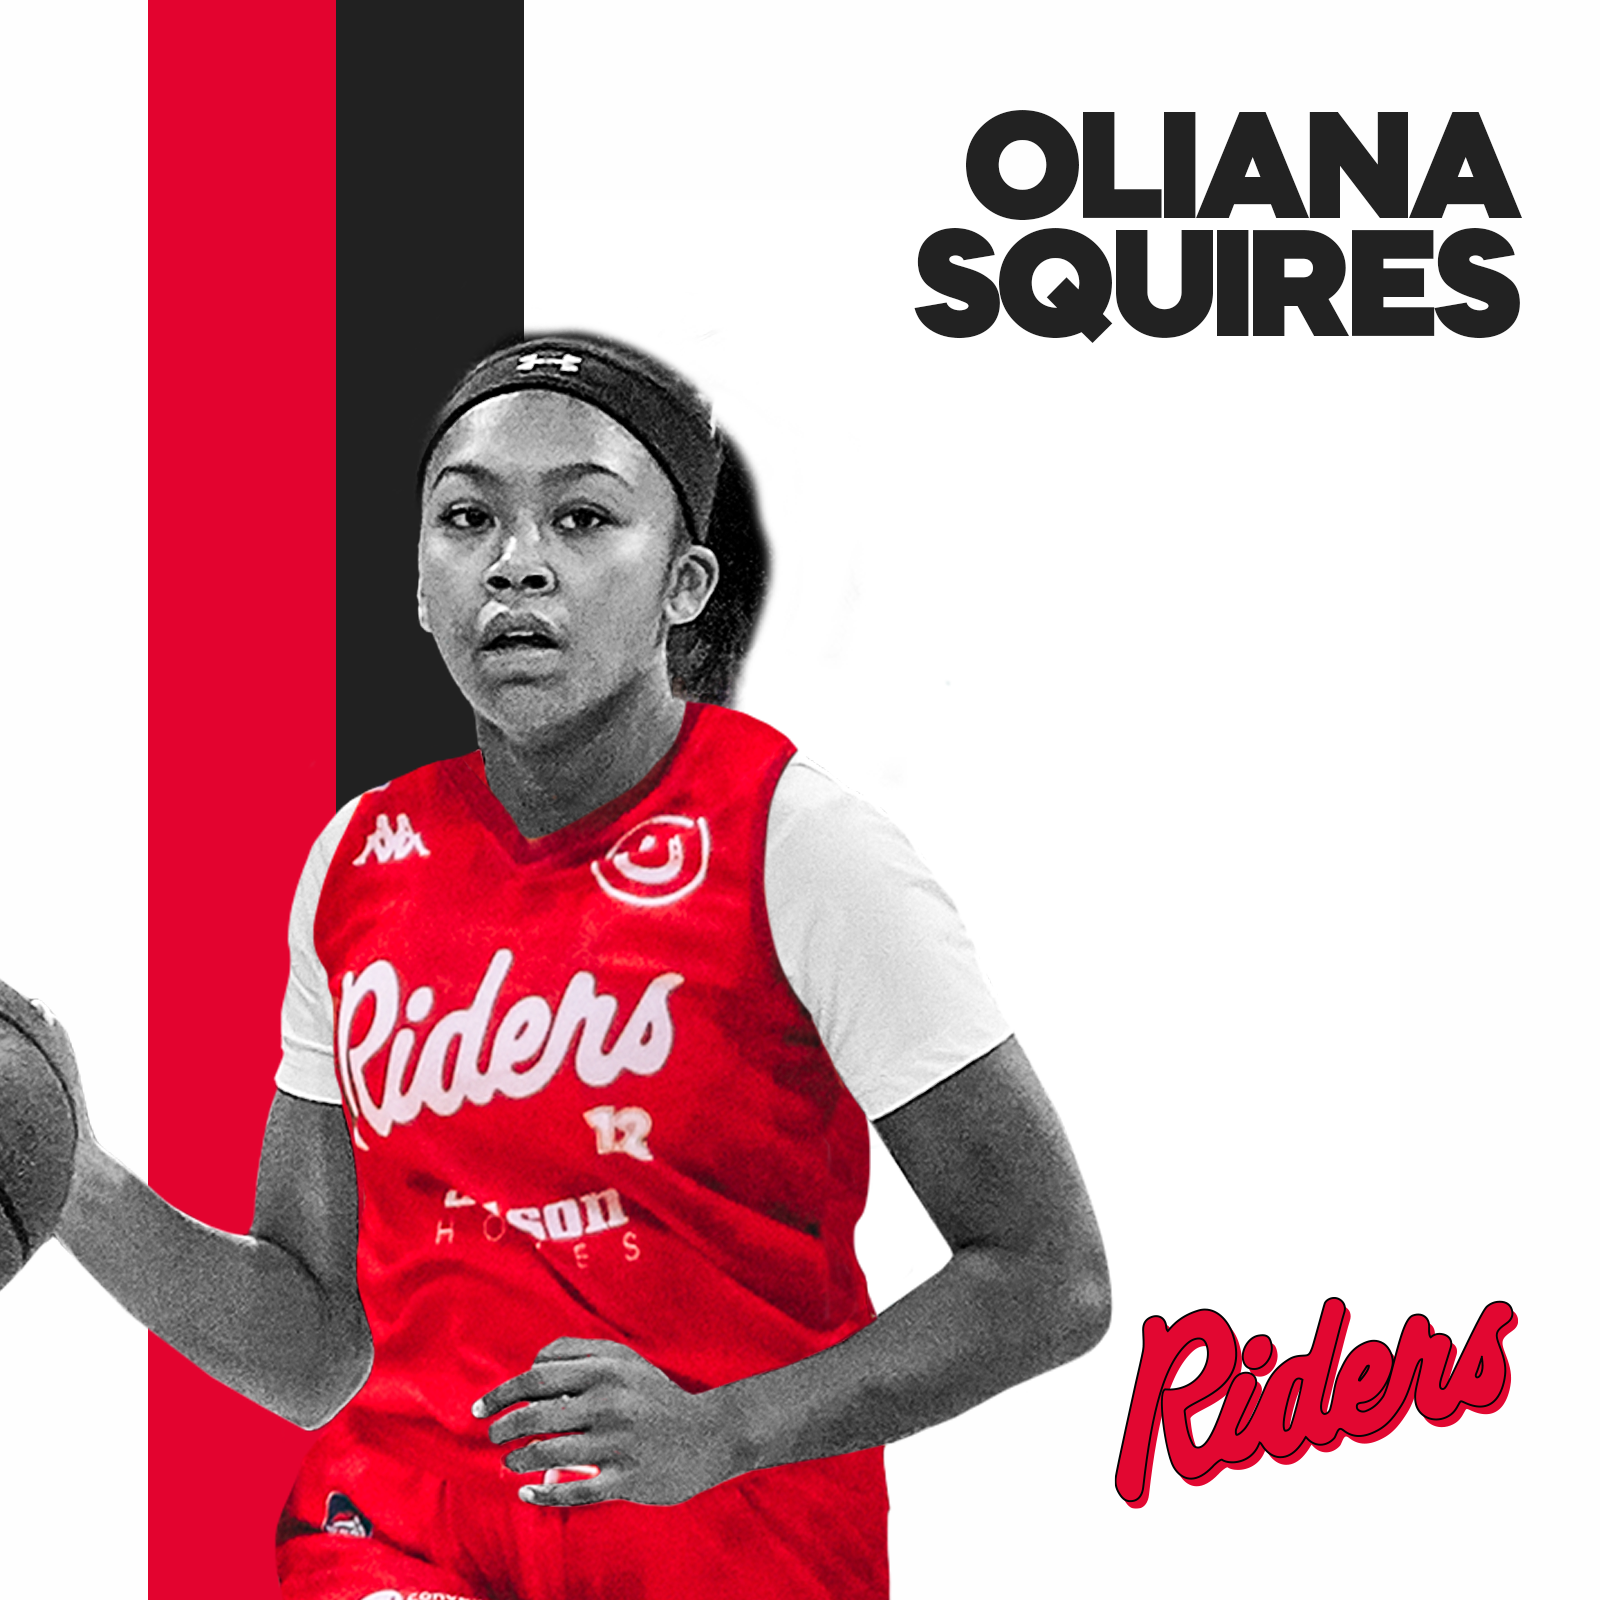 Oliana Squires